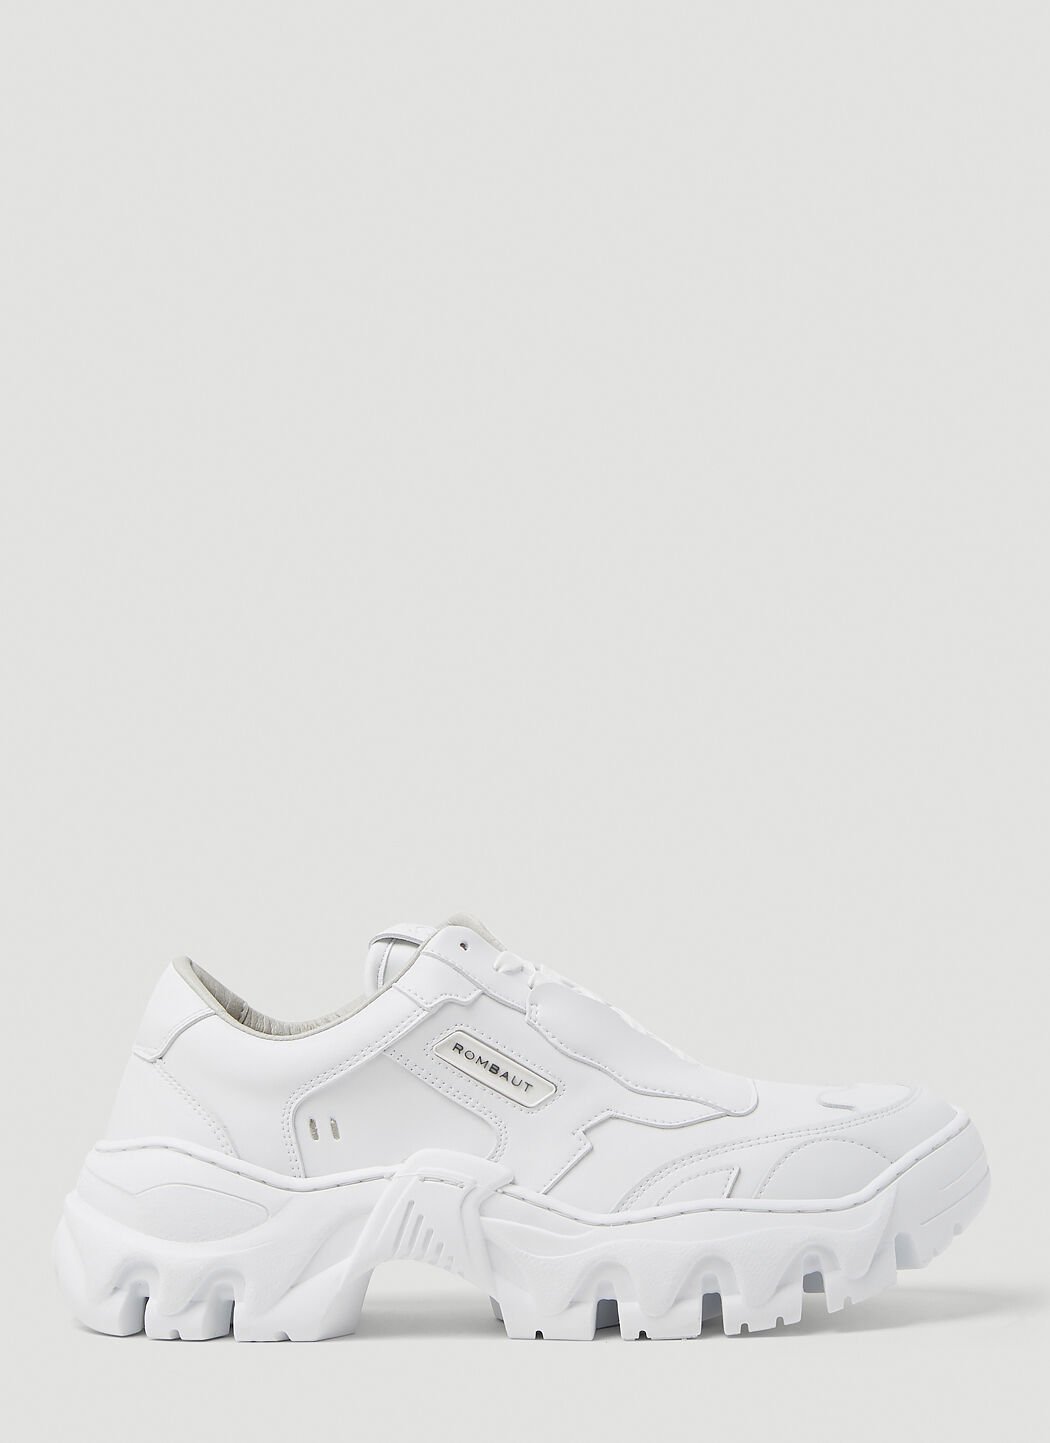 Veja Boccaccio II Low Sneakers White vej0343010